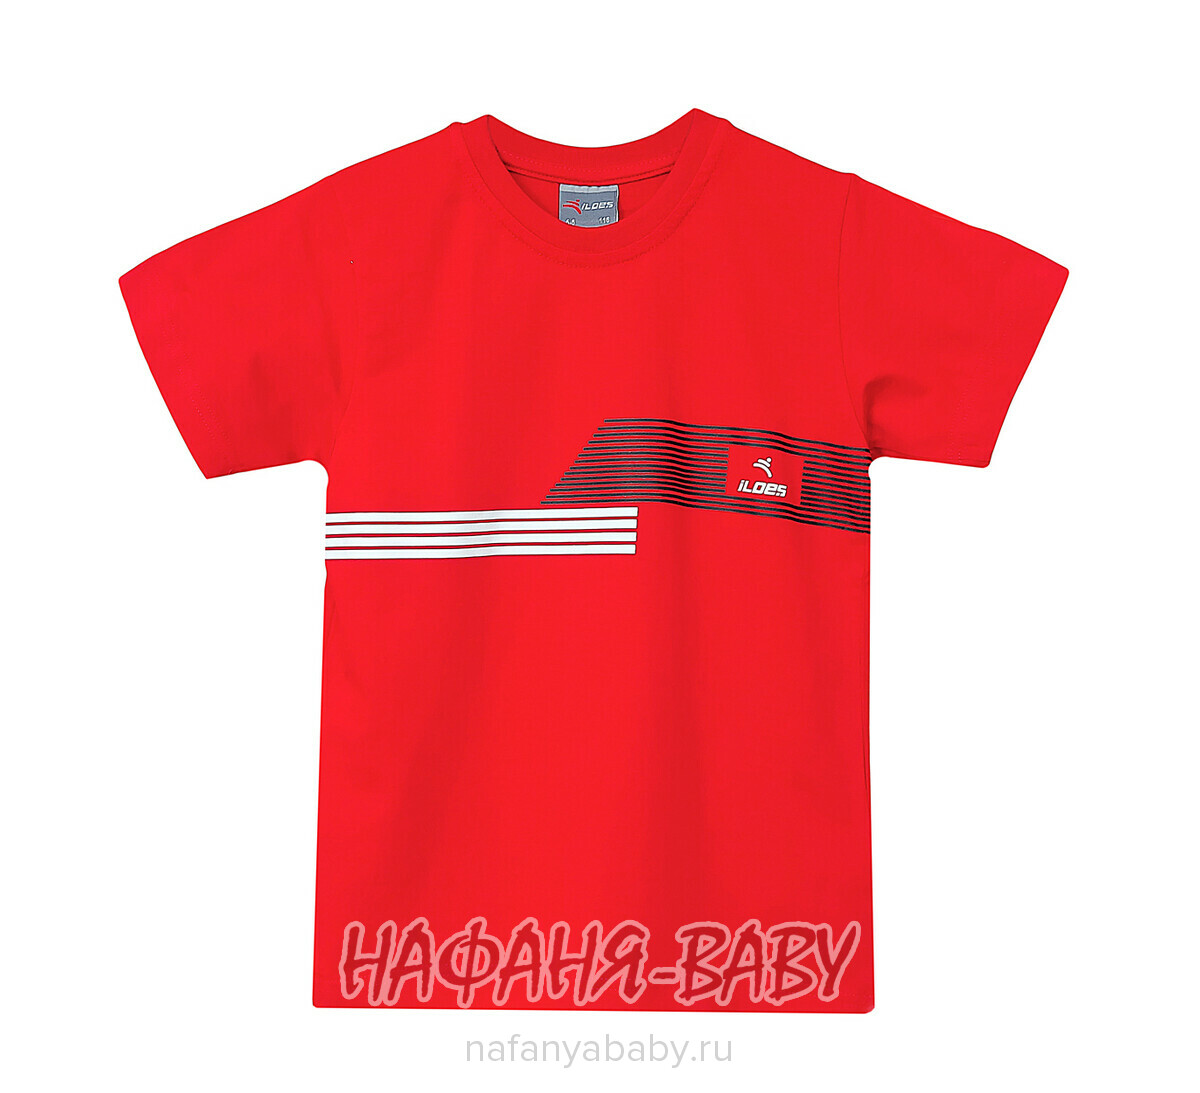 Детская футболка ILDES арт. 2195, 5-9 лет, цвет красный, оптом Турция